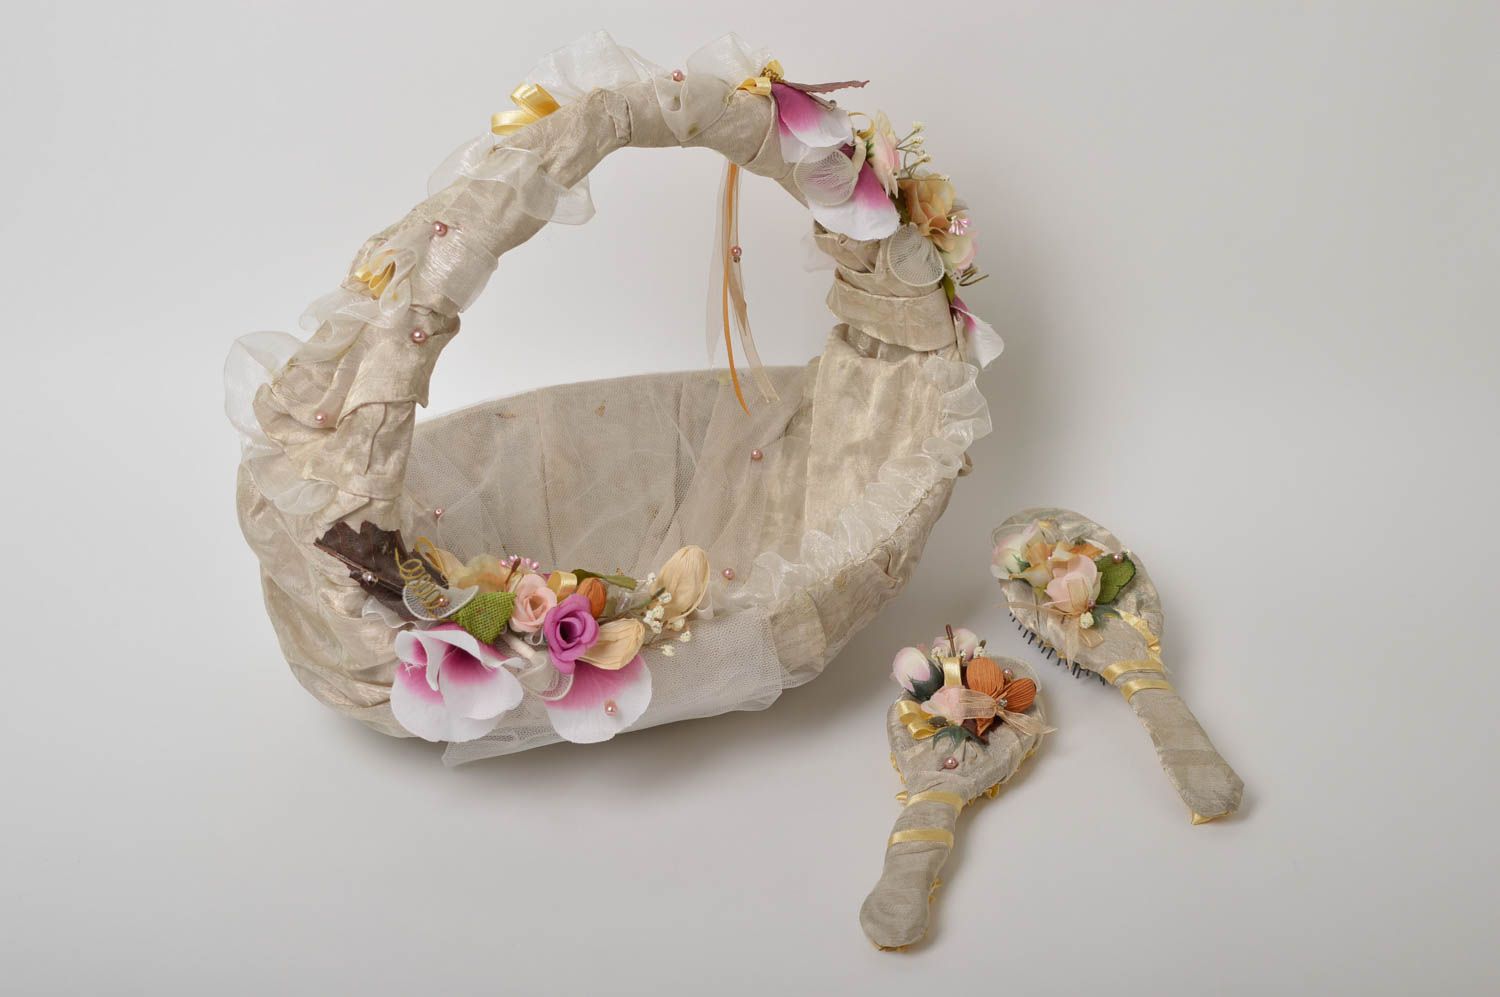 Handmade wedding accessories set flower basket hair brush hand mirror ideas photo 5